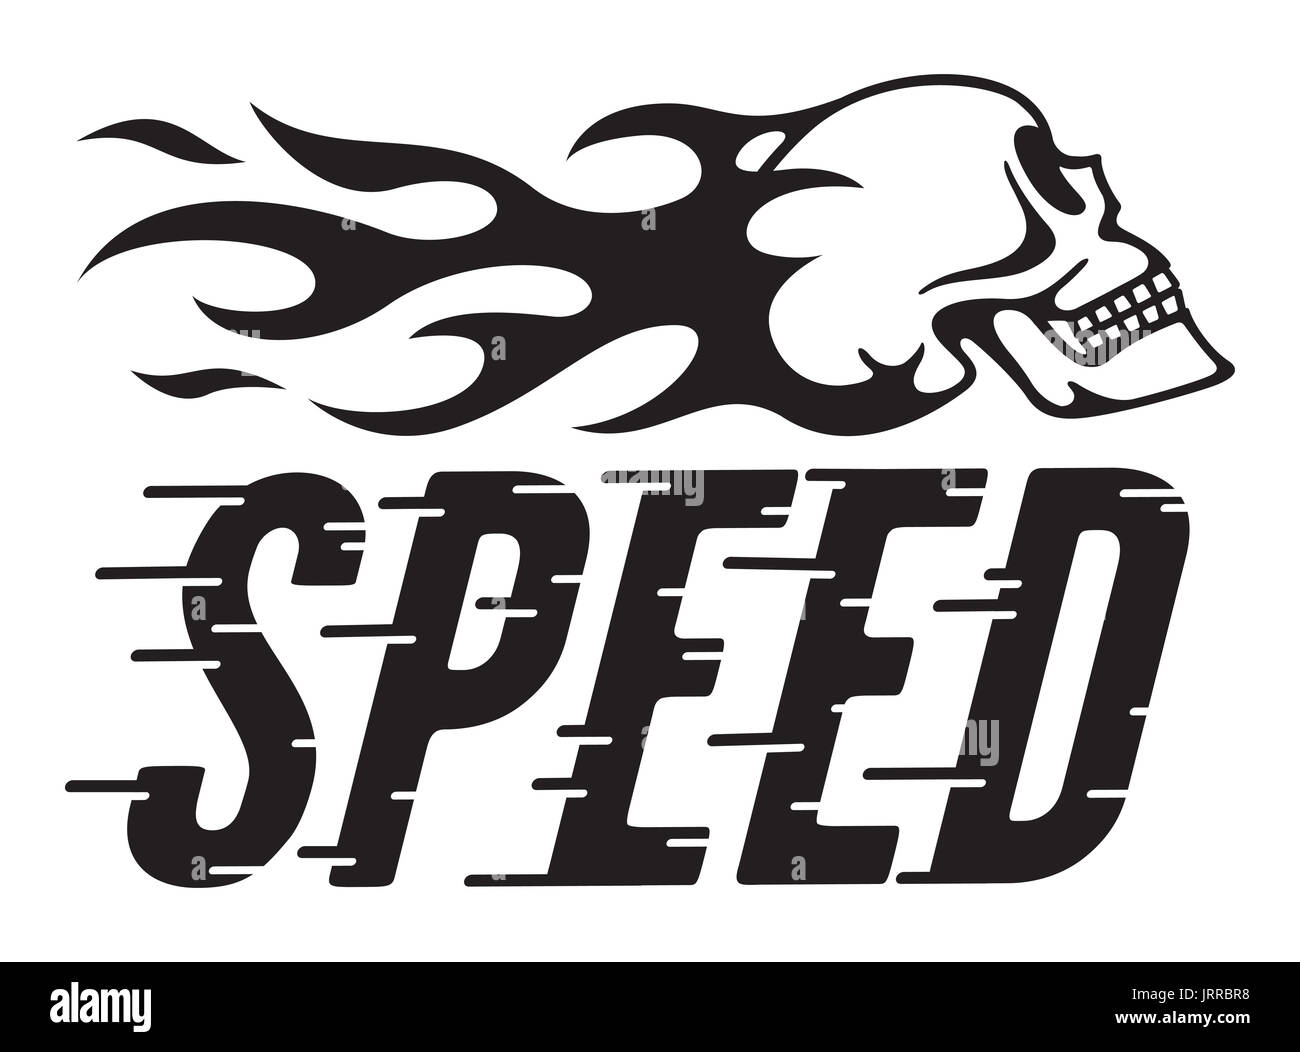 Retro design vecteur vitesse avec vitesse et flaming skull vector illustration de hot rod, moto, graphique avec la ligne vitesse personnalisée lettres. Banque D'Images